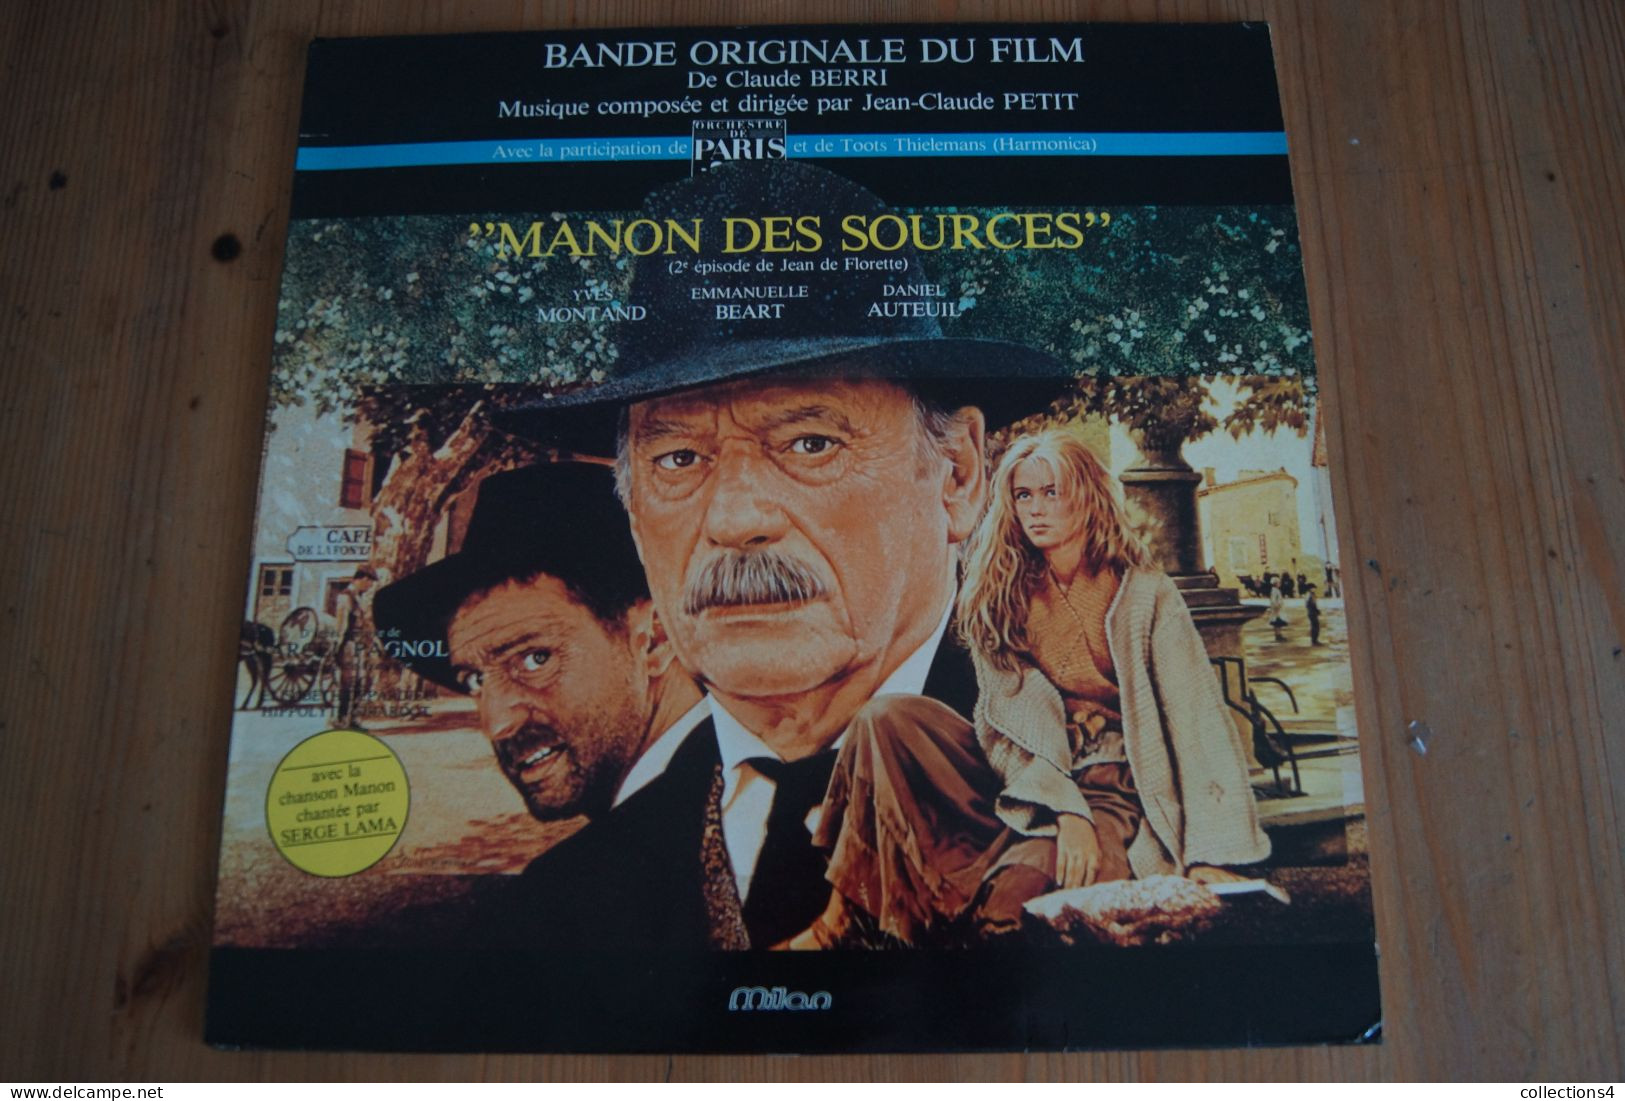 MANON DES SOURCES JEAN CLAUDE PETIT SERGE LAMA MARCEL PAGNOL EMMANUELLE BEART MONTAND DANIEL AUTEUIL LP DU FILM 1986 - Filmmusik